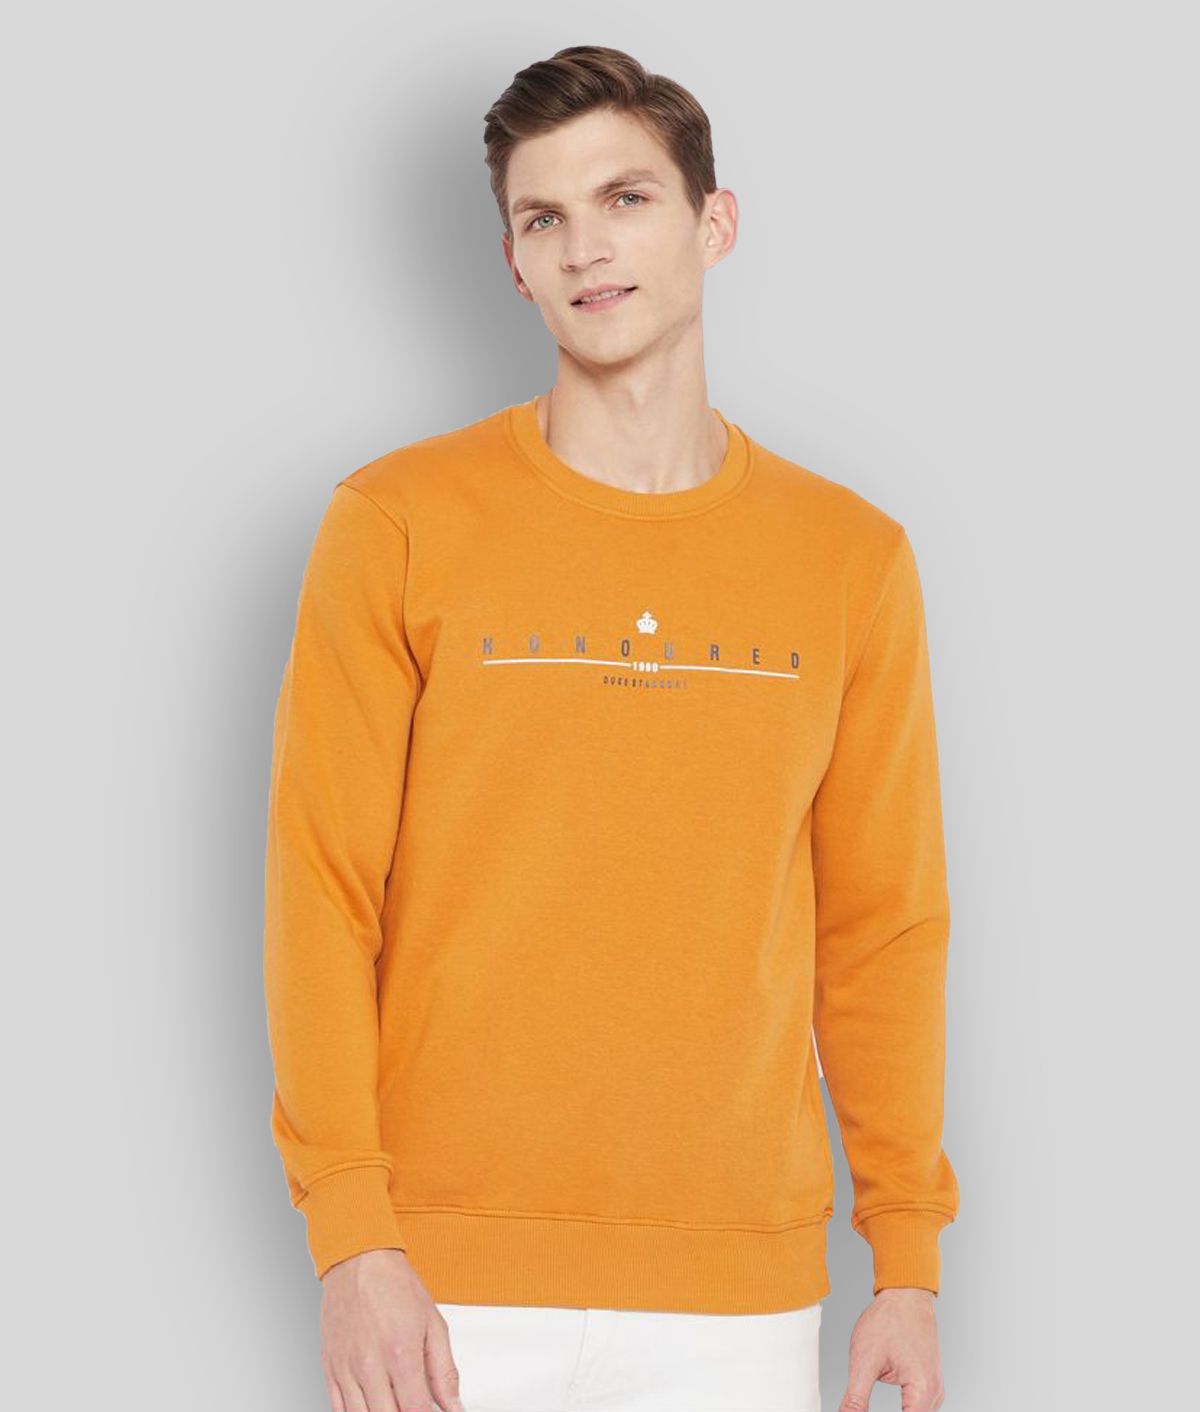 Duke Yellow Sweatshirt Pack of 1